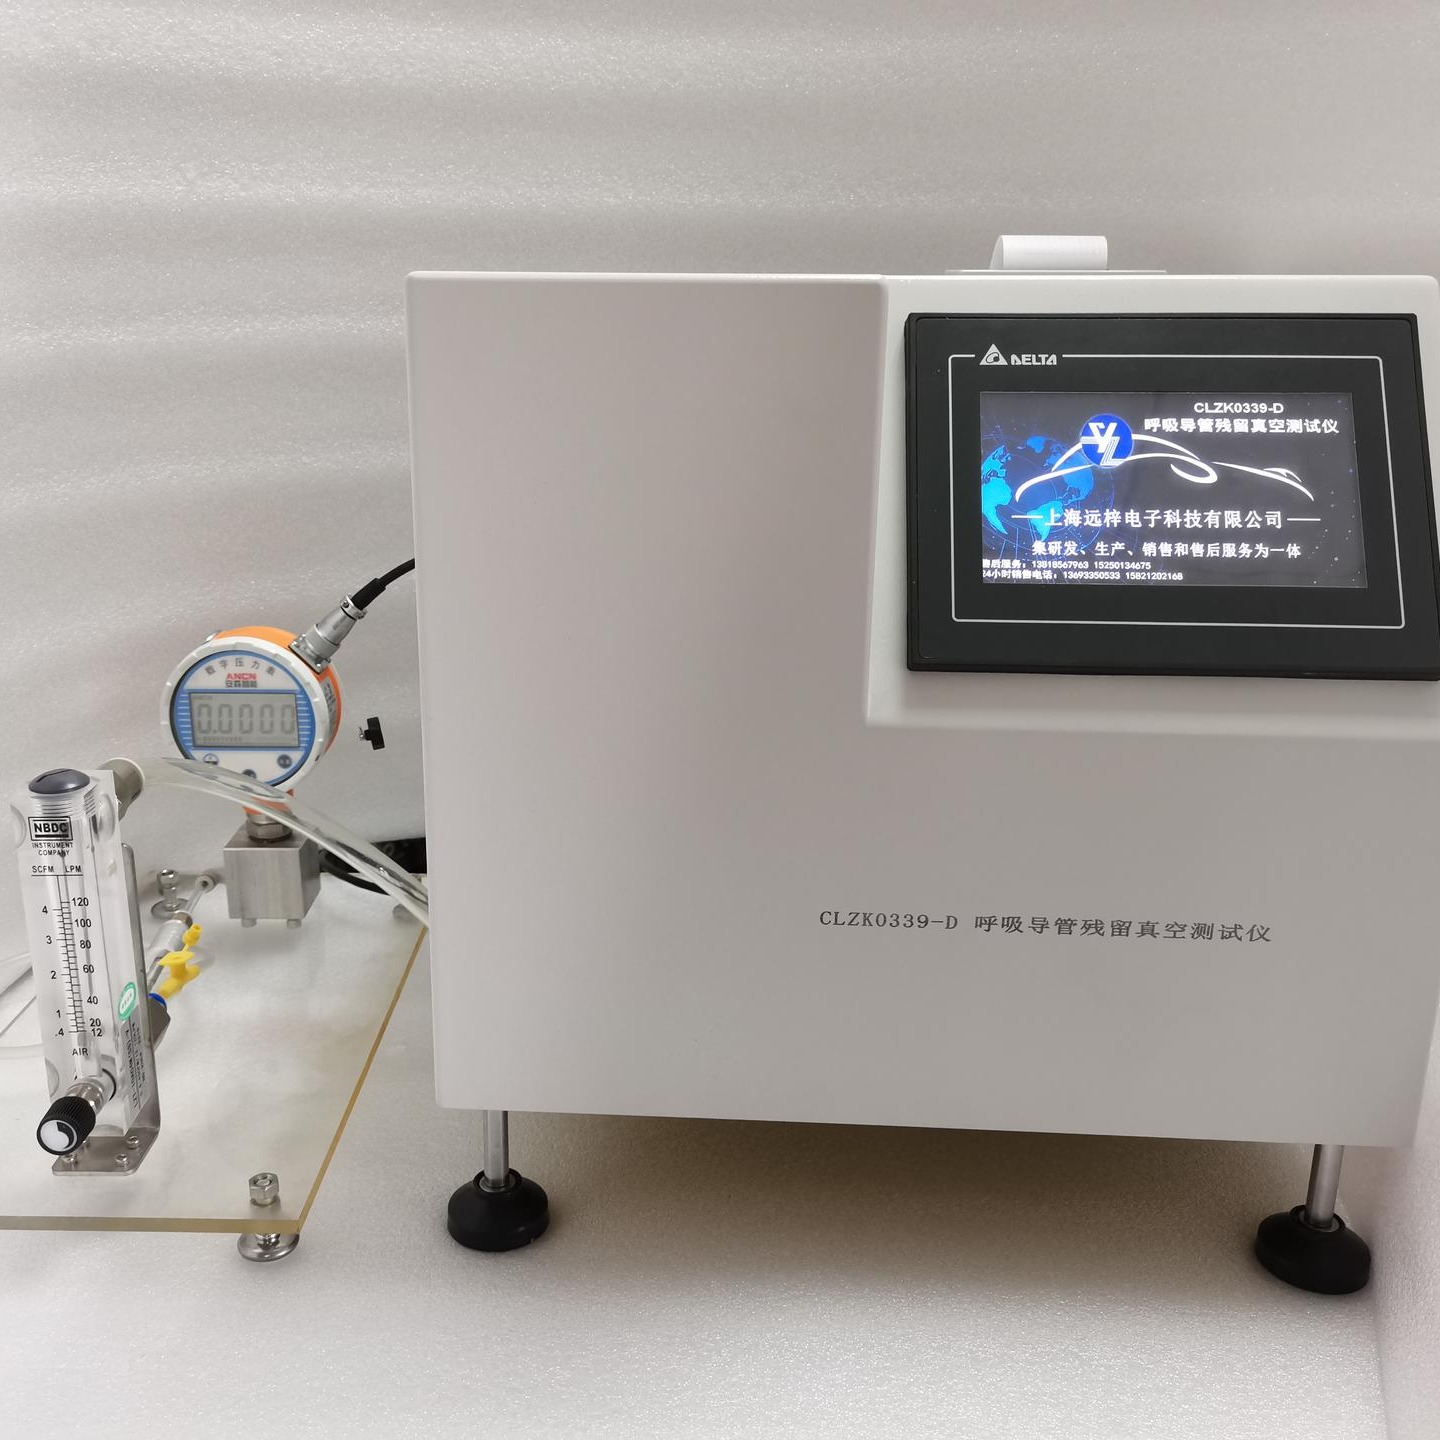 呼吸导管泄漏测试仪 HXXL0339-D 源头厂家 上海远梓